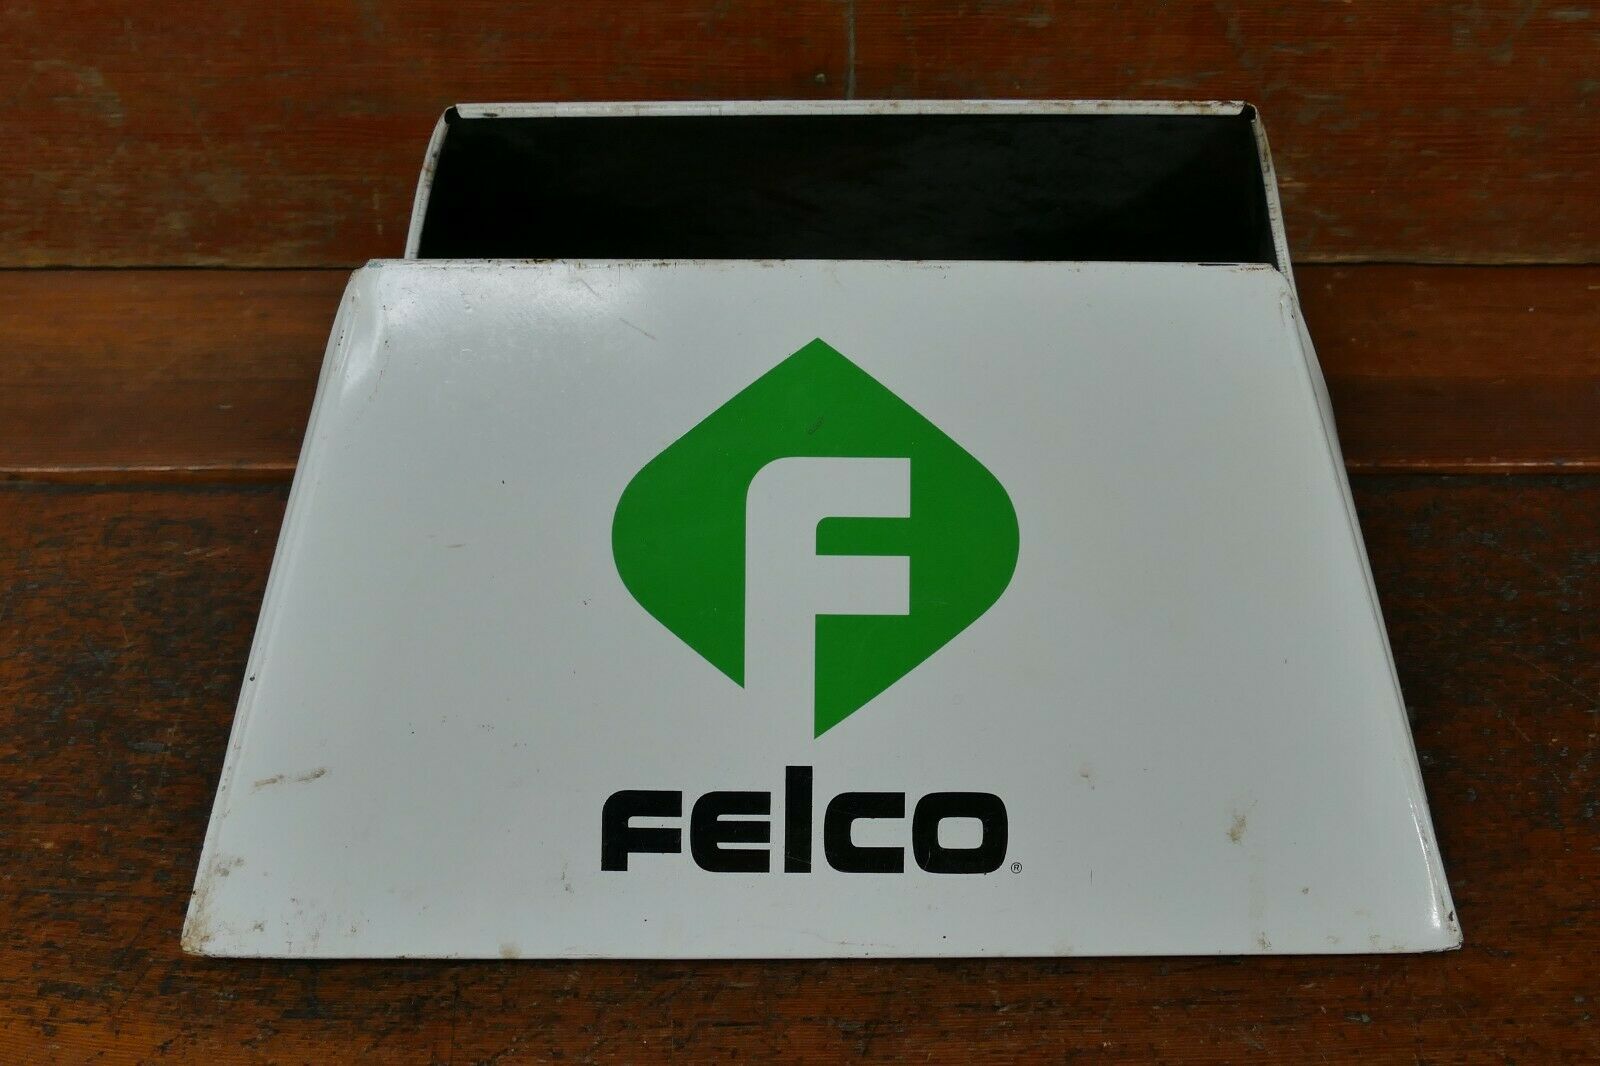 Rare Vintage Original Felco Land O Lakes Seed Feed Sack Bag Display Stand Holder